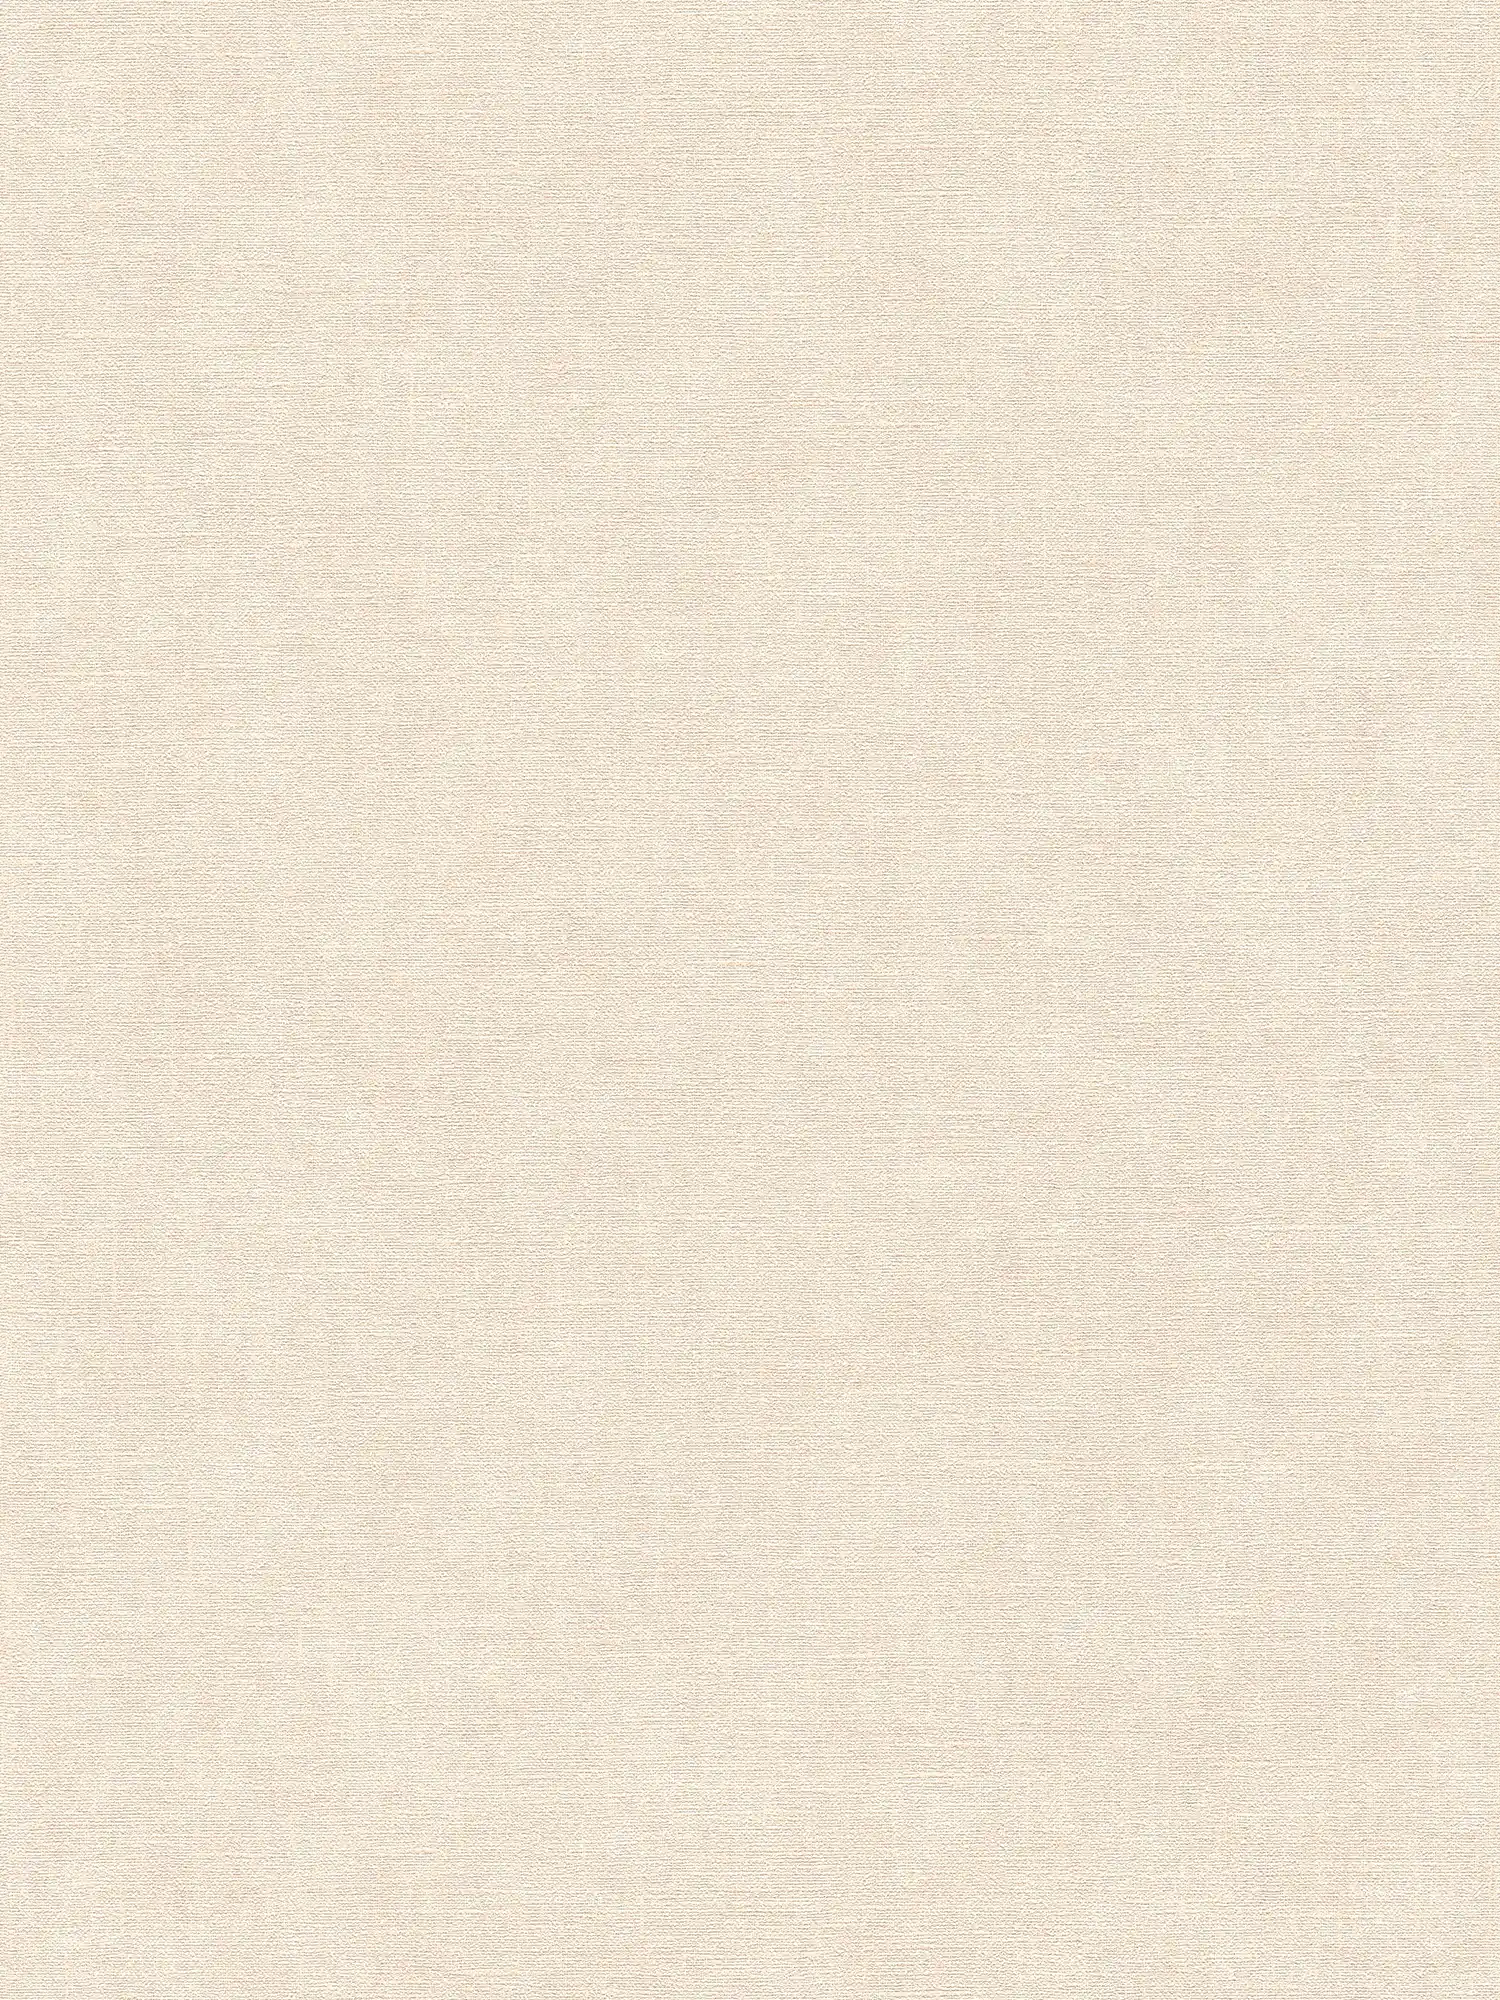 Carta da parati monocolore in tessuto non tessuto effetto gesso con texture leggera - beige, crema
